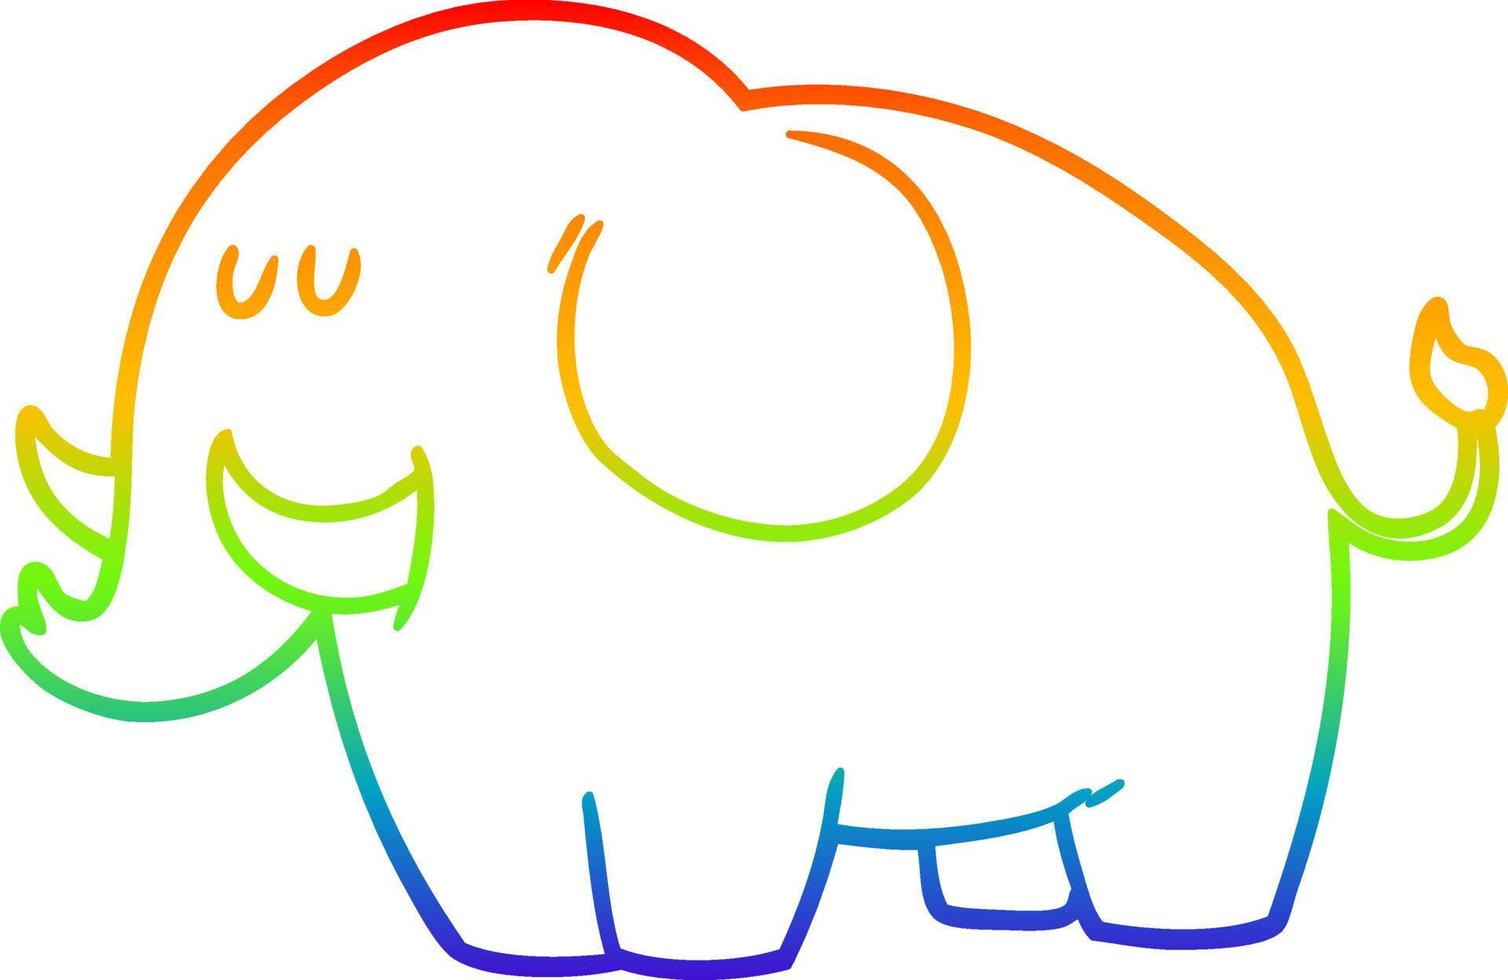 desenho de linha de gradiente de arco-íris elefante de desenho animado vetor